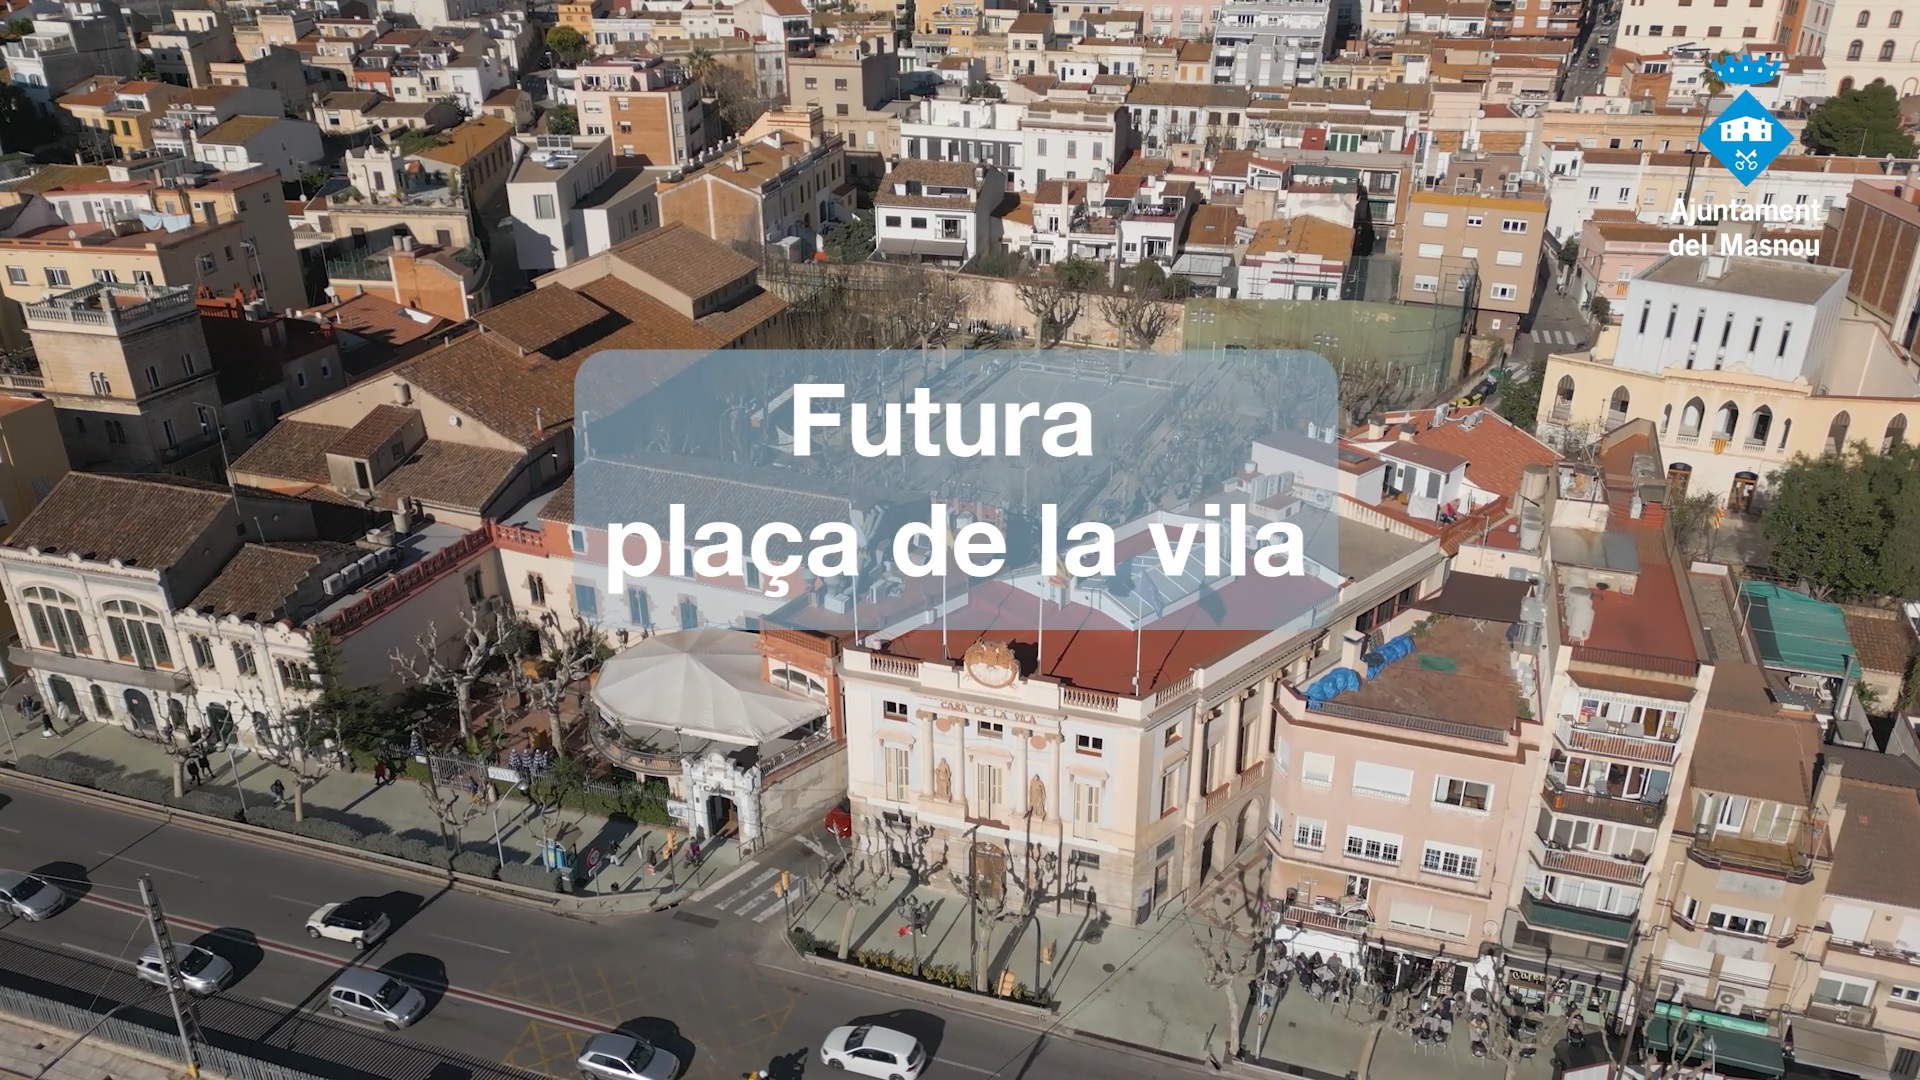 Fragment que forma part del vídeo que resumeix la transformació urbanística del Masnou.